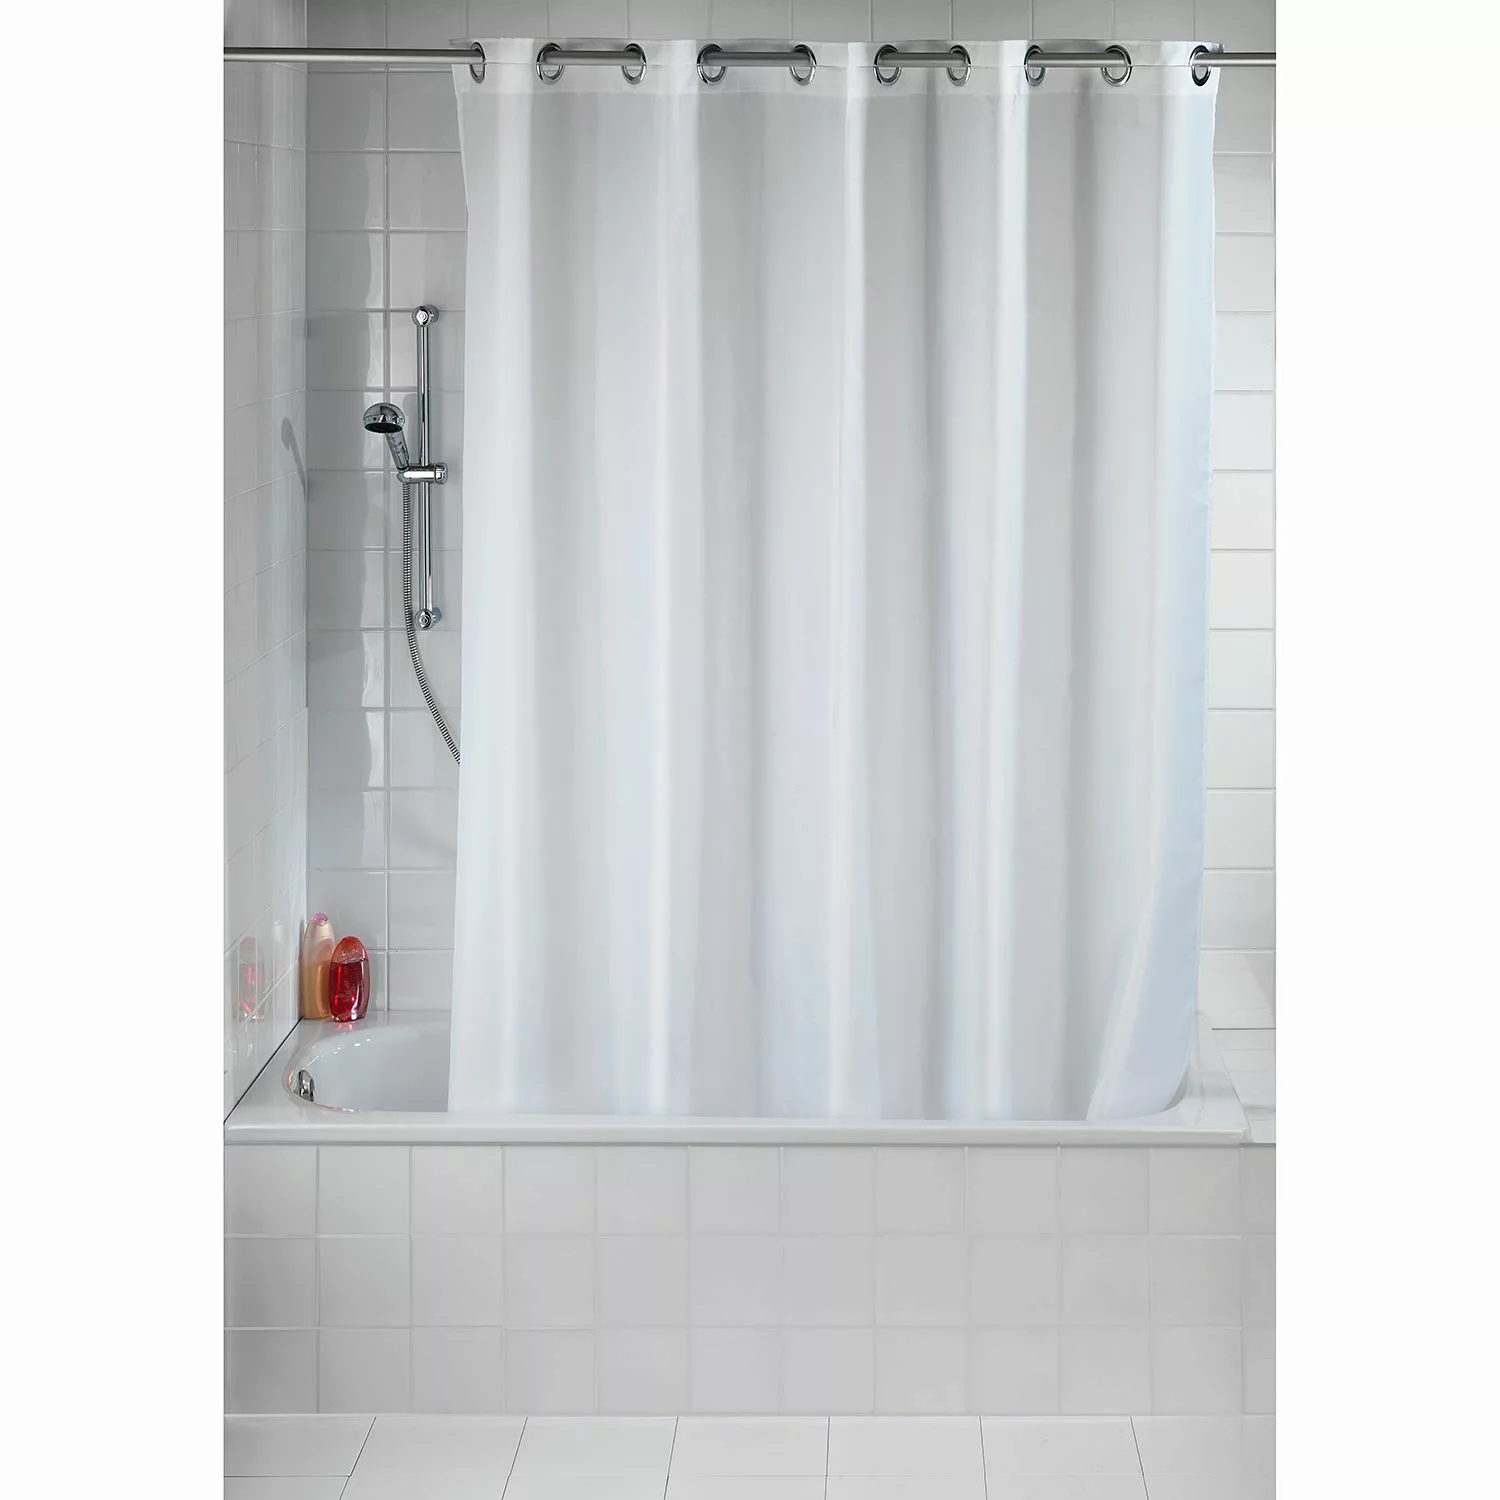 WENKO Duschvorhang Comfort Flex Weiß, Textil (Polyester), 180 x 200 cm, was günstig online kaufen